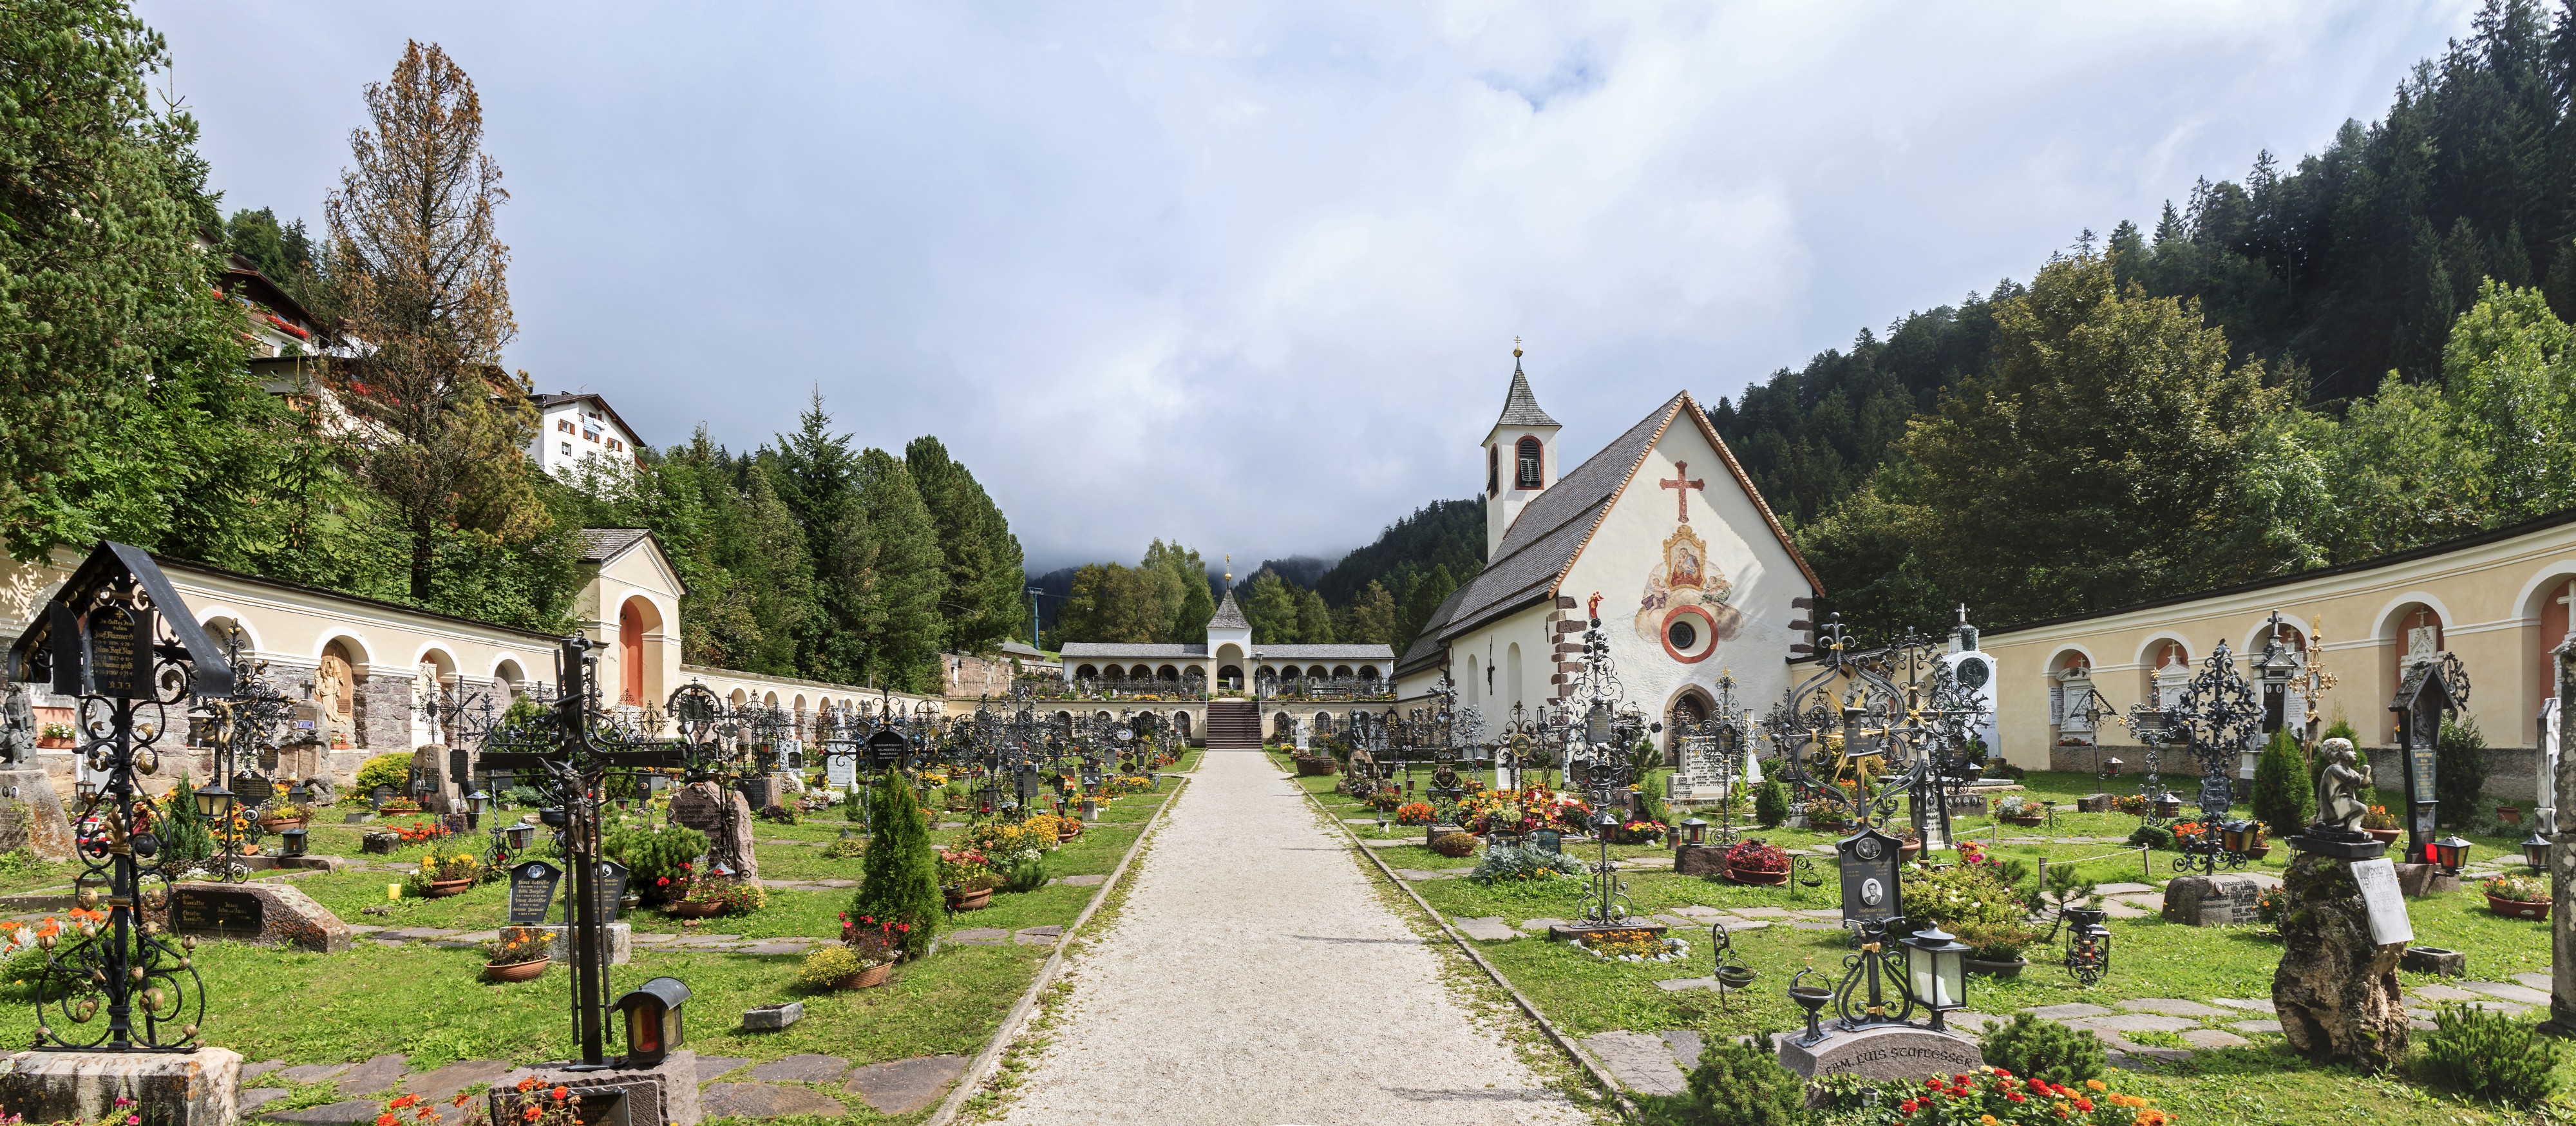 Cemetery - Urtijëi